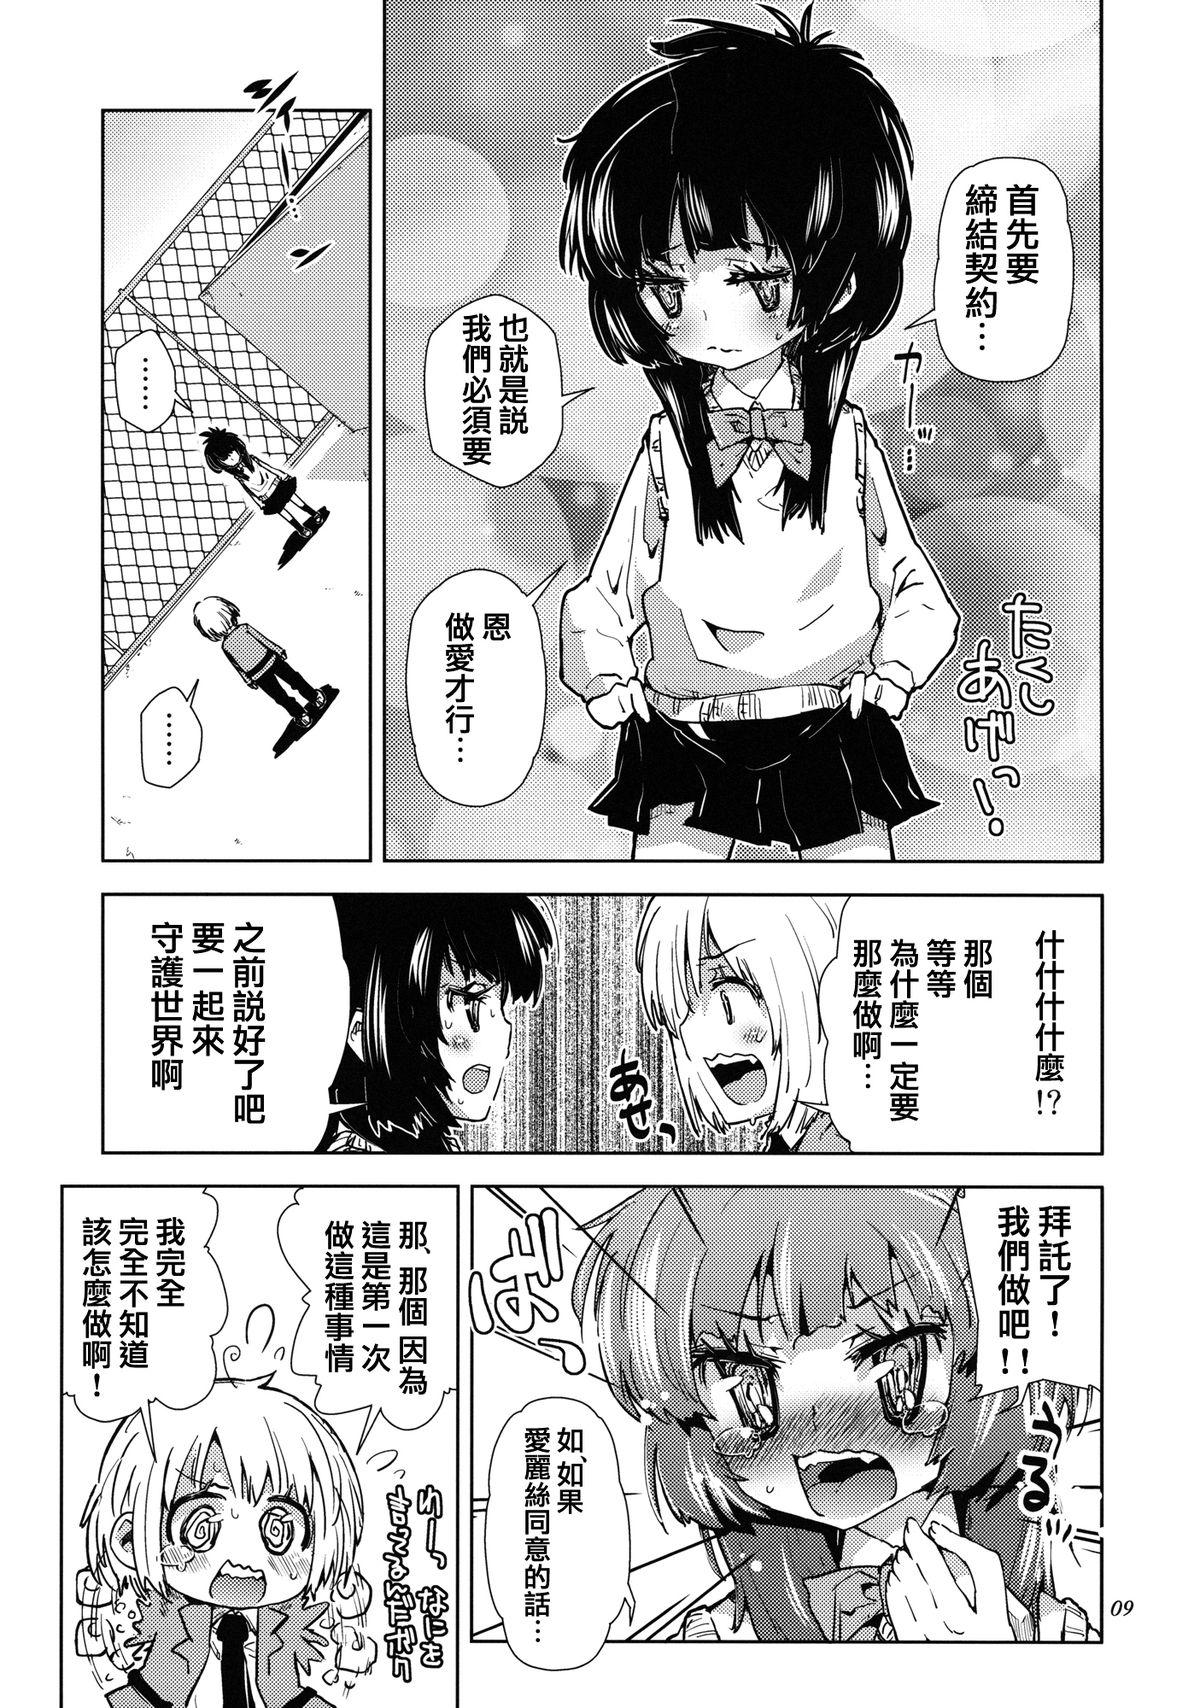 Sluts Sekai ga Dou Toka itsu Chau Otoko no Musume wa Denpa Kawaii. Cut - Page 8